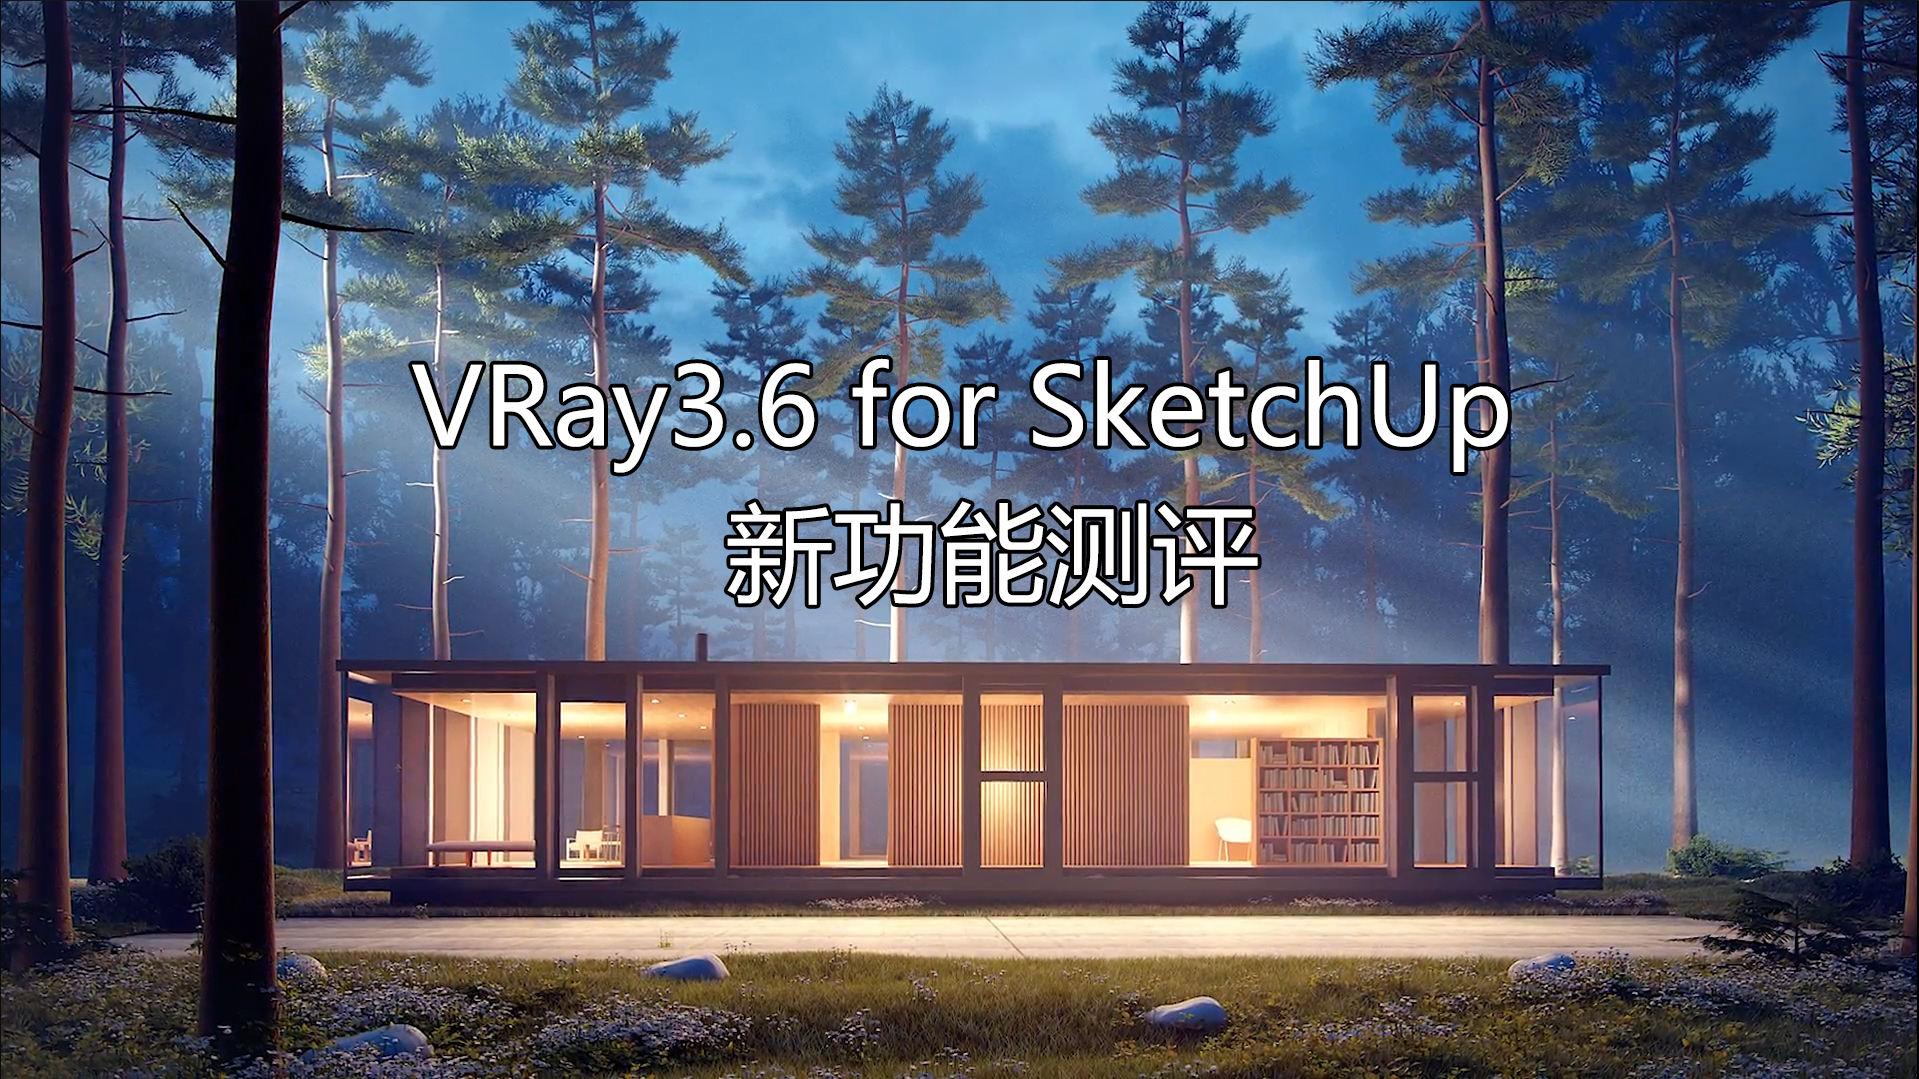 vray3.6 for sketchup【草图大师2015/2016/2017/2018渲染器】顶渲简体中文版安装图文教程、破解注册方法